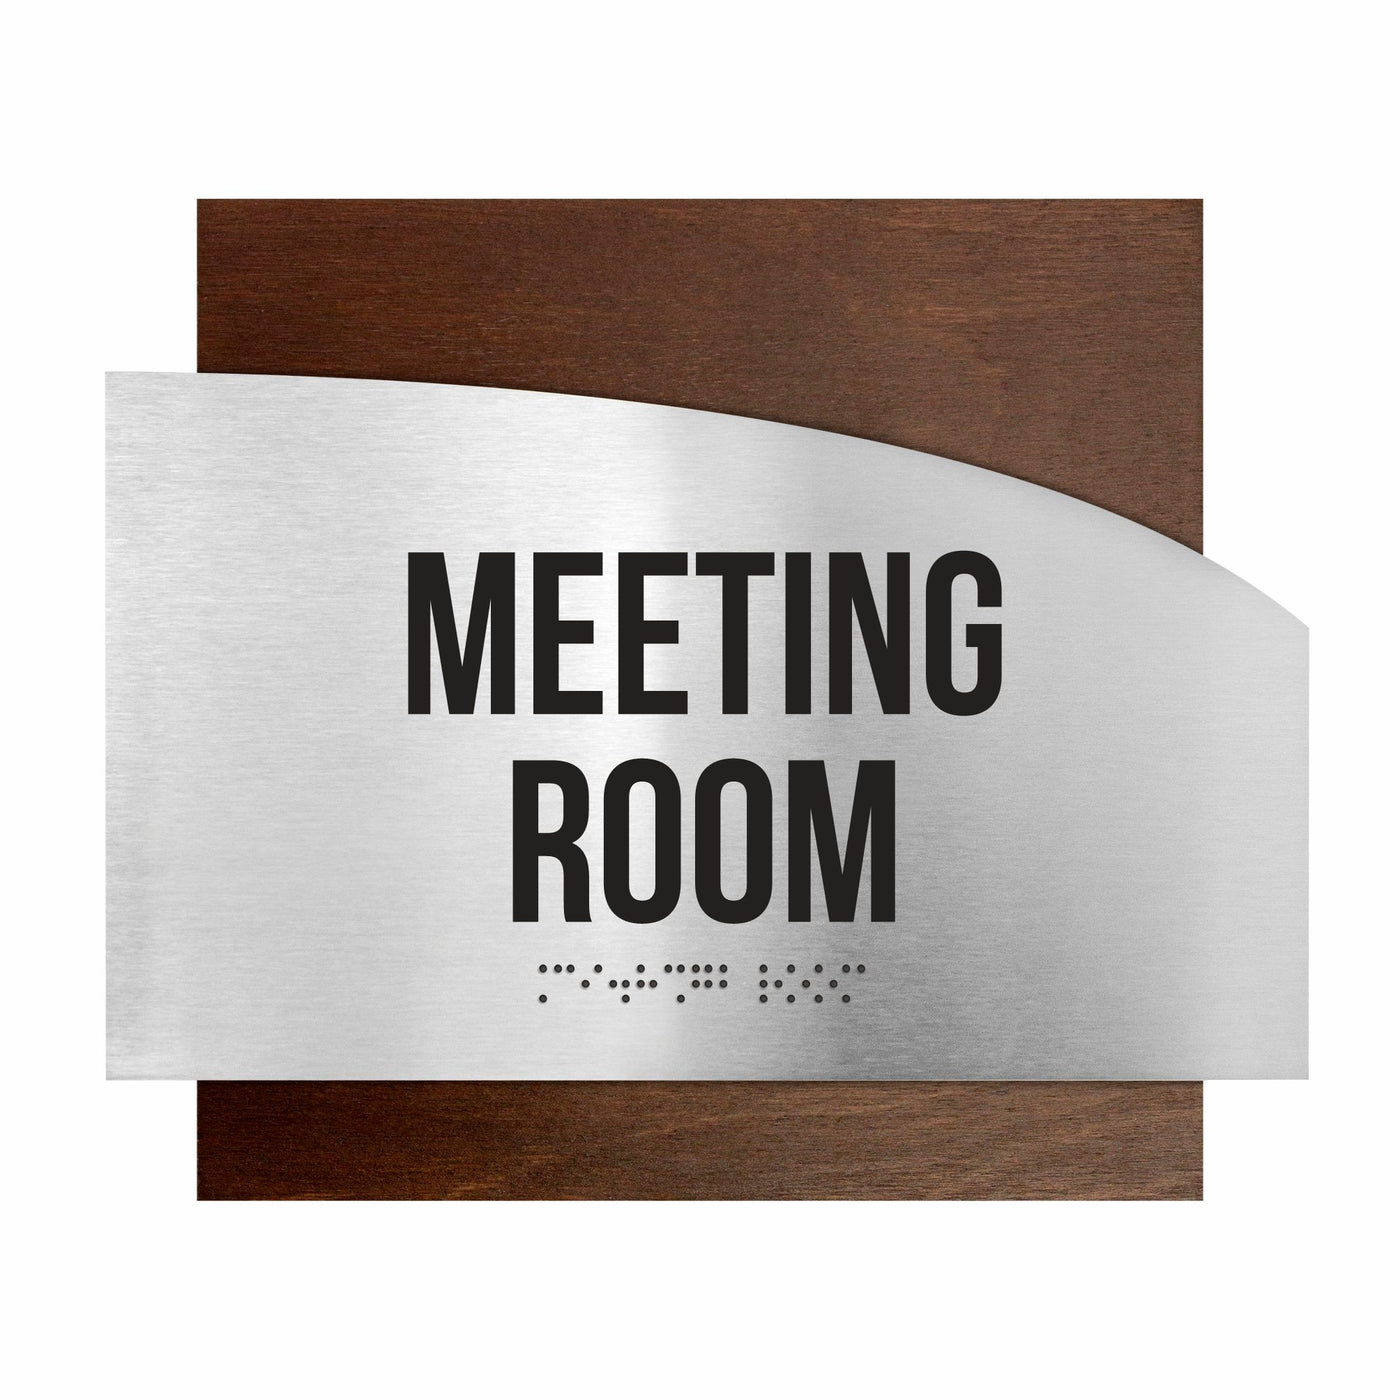 Door Signs - Meeting Room Signs - Stainless Steel & Wood Plate - "Wave" Design